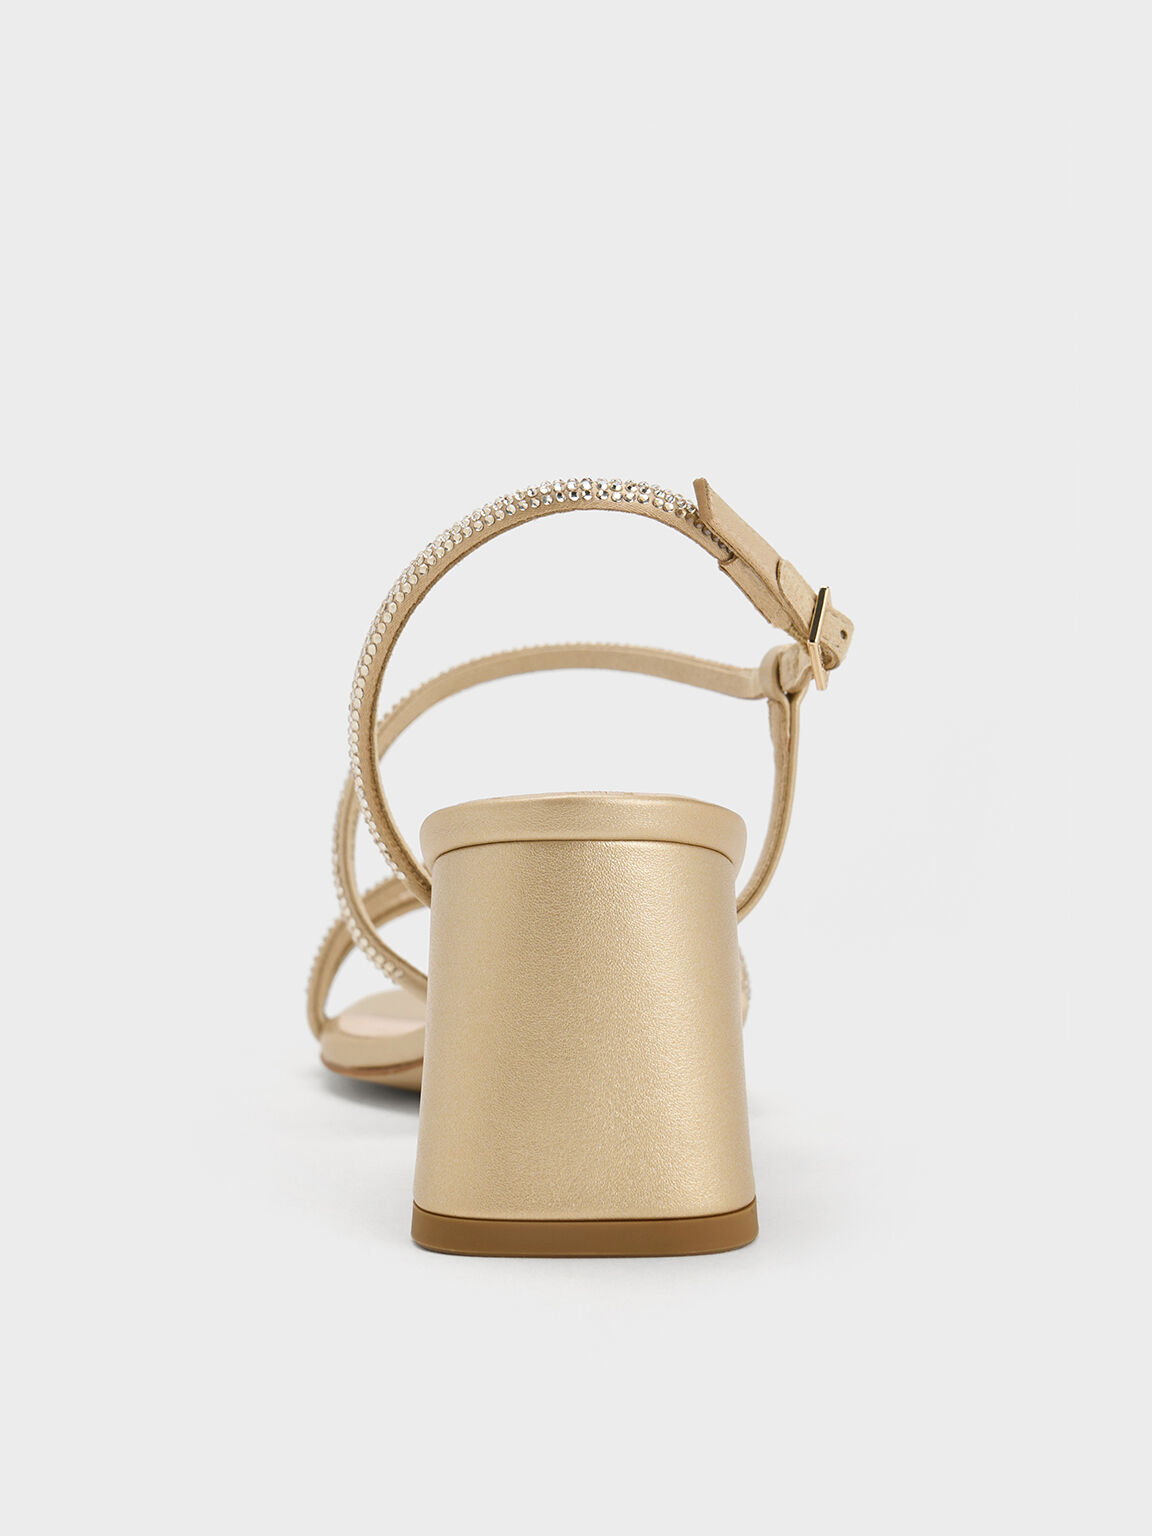 Satin Crystal-Embellished Block-Heel Strappy Sandals, Gold, hi-res